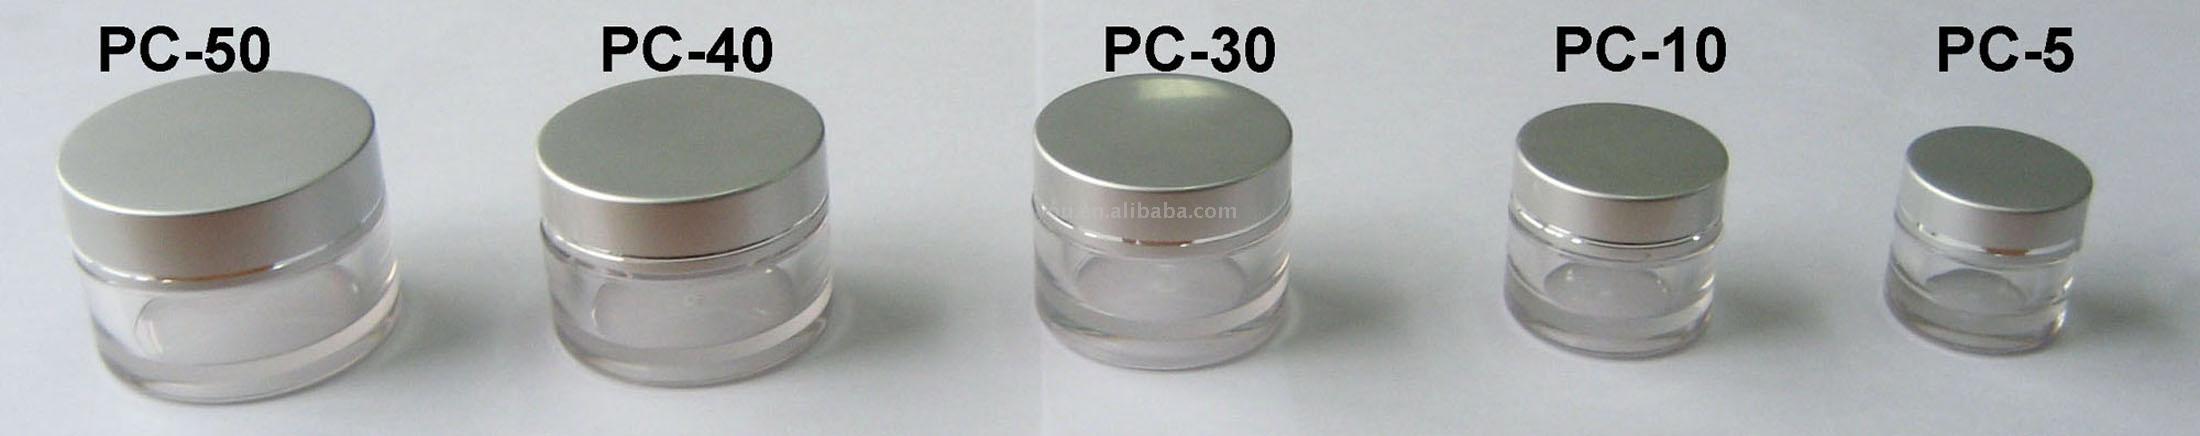  Plastic Jar (Пластмассовой емкости с крышкой)